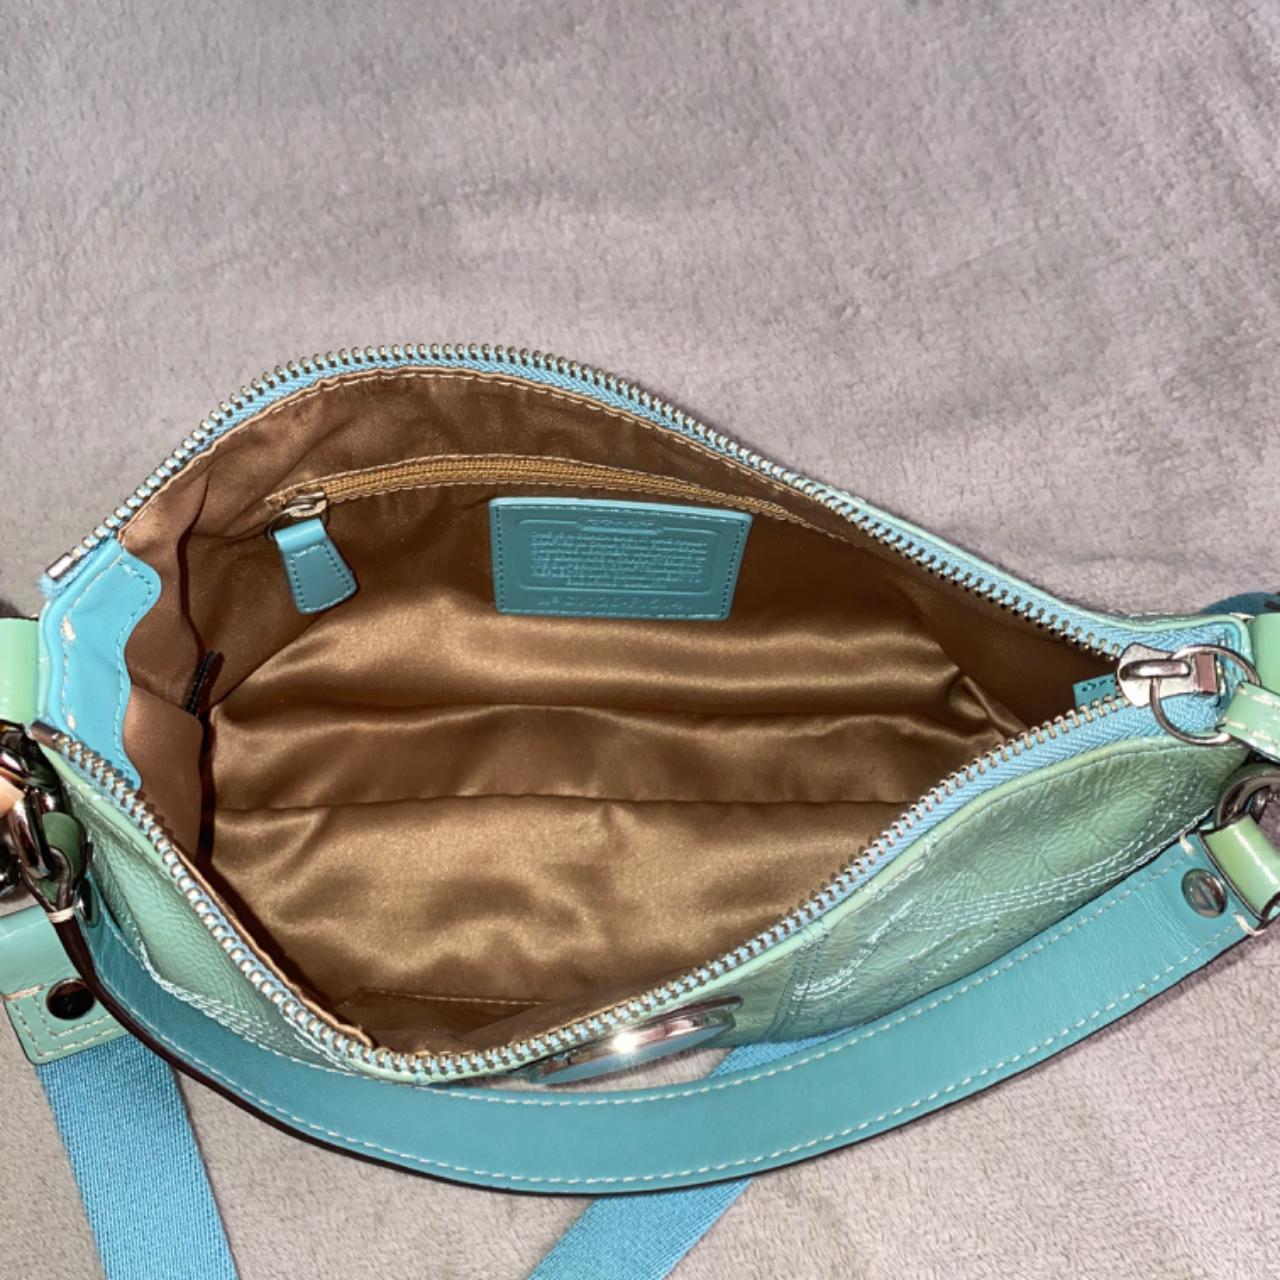 Vintage Y2K Coach mini shoulder bag G15 - 6094 - Depop